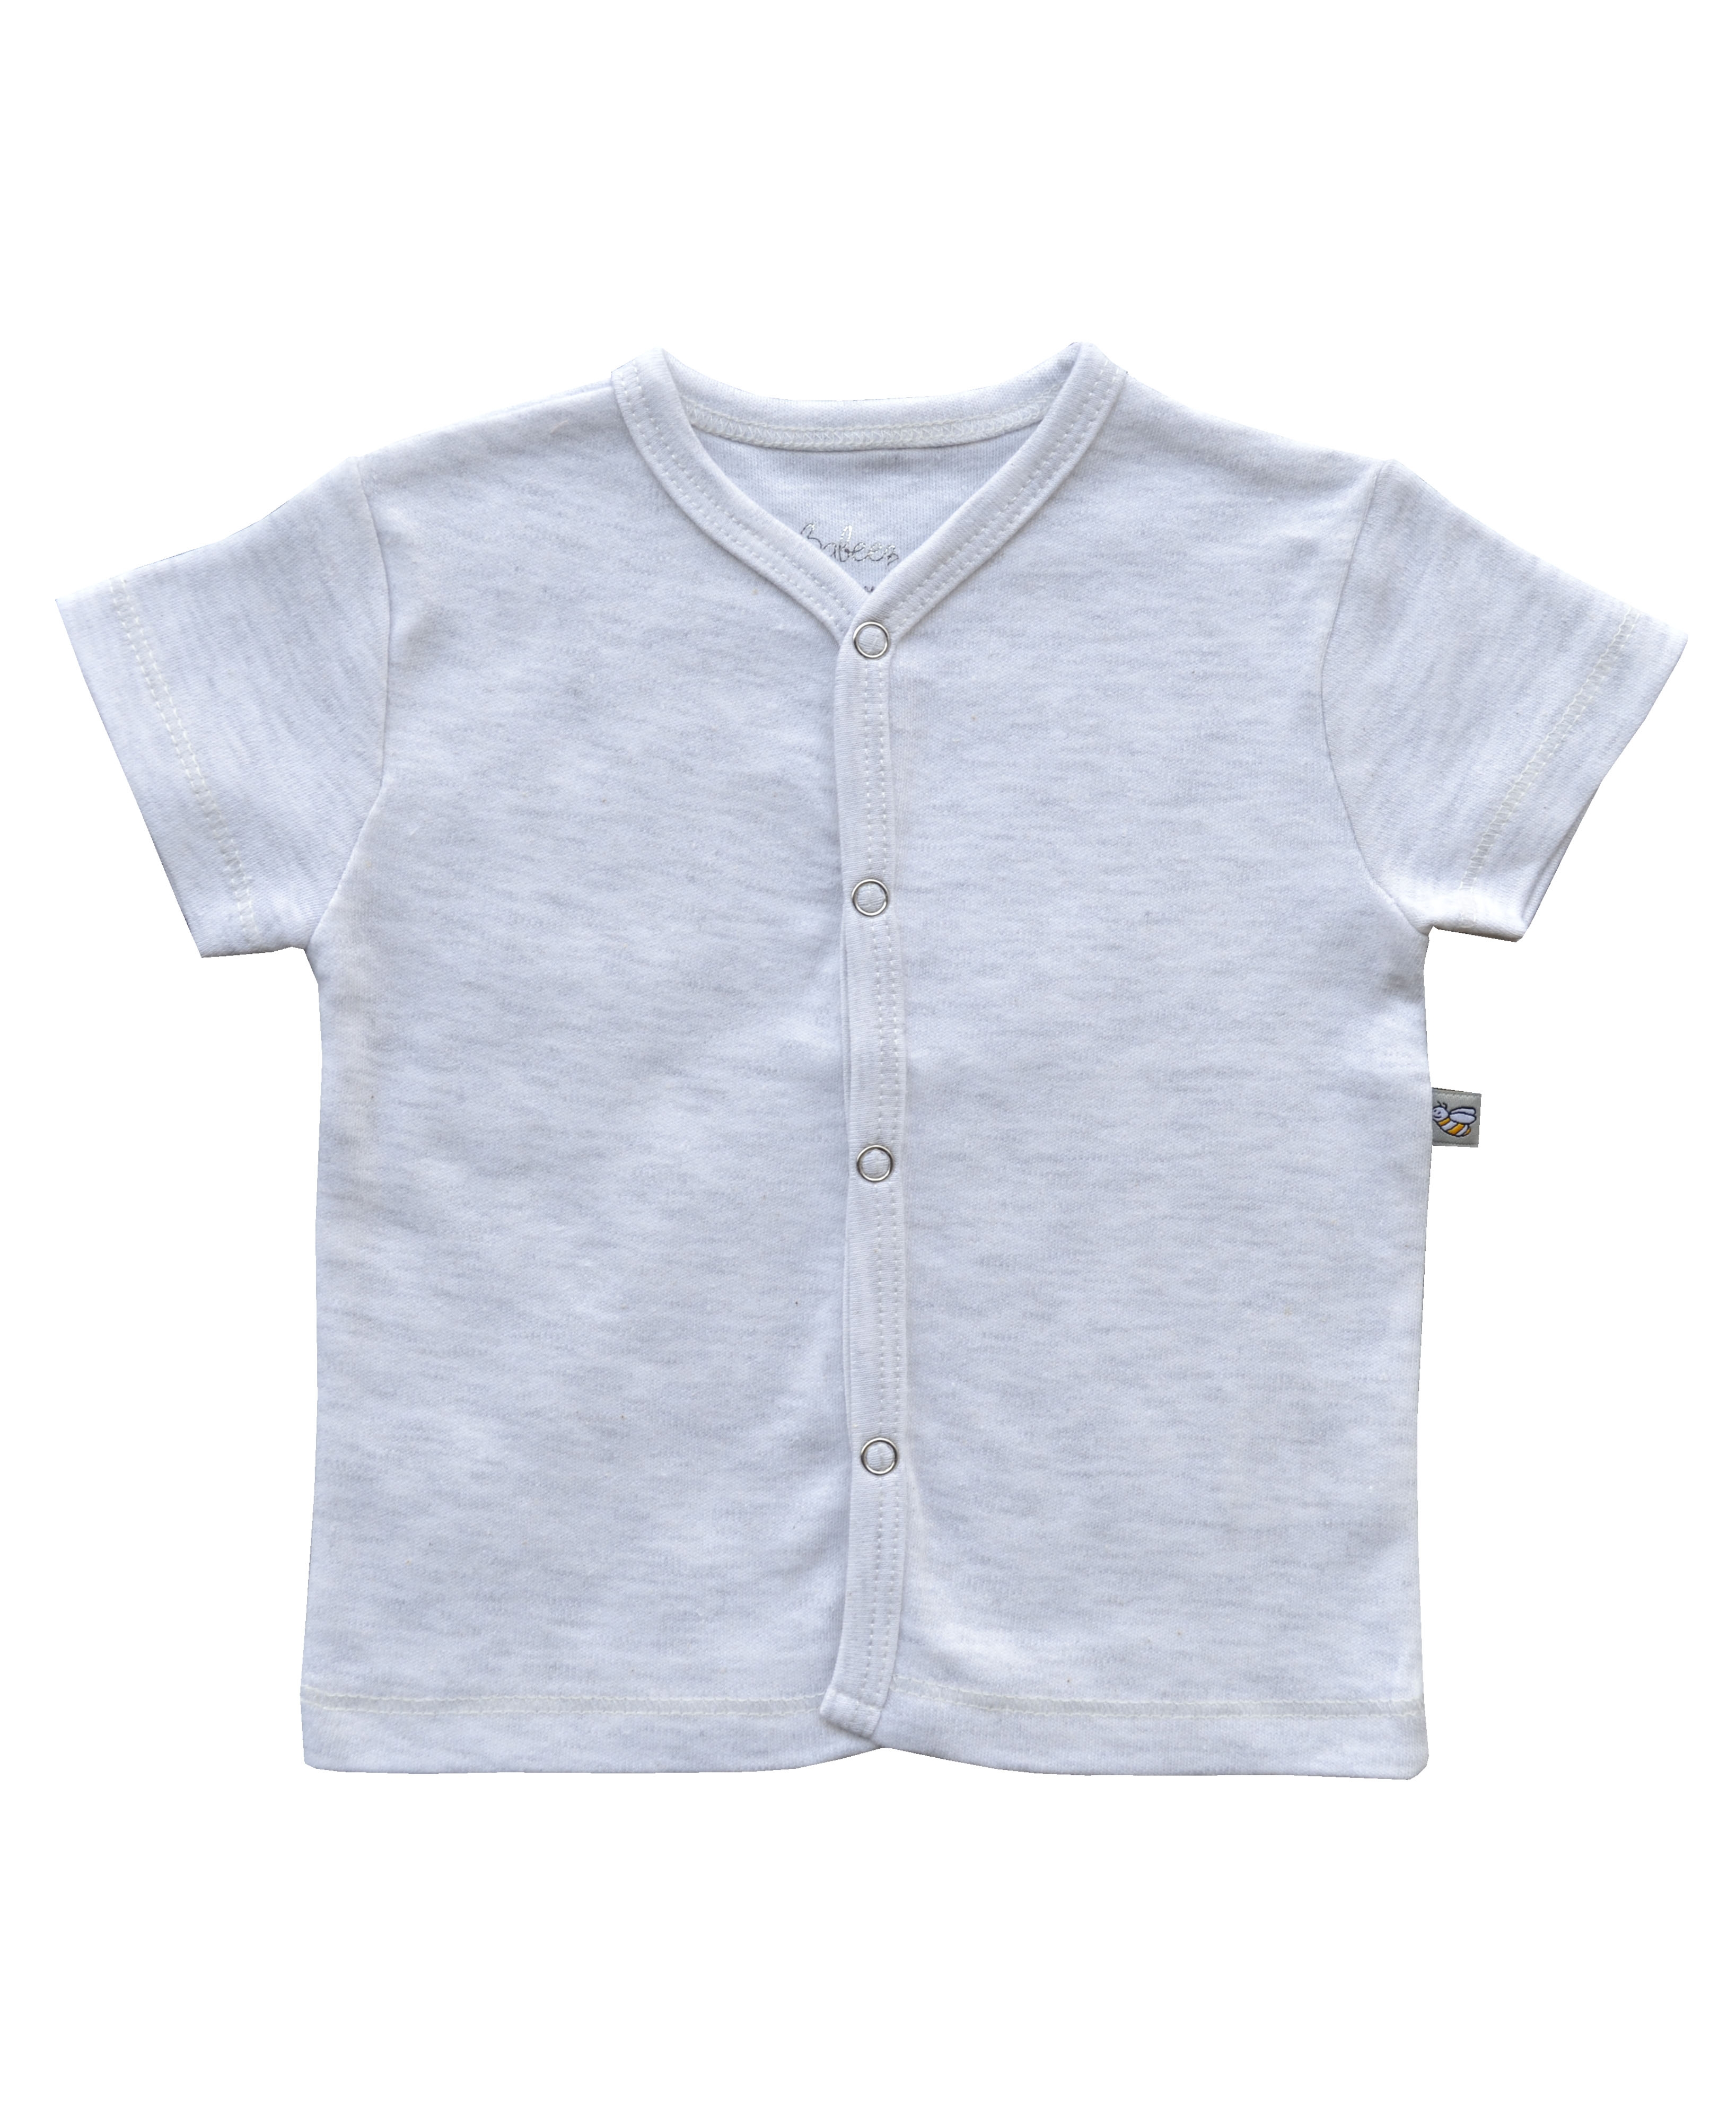 Babeez | Grey Short Sleeve Jhabla (100% Cotton Interlock Biowash) undefined